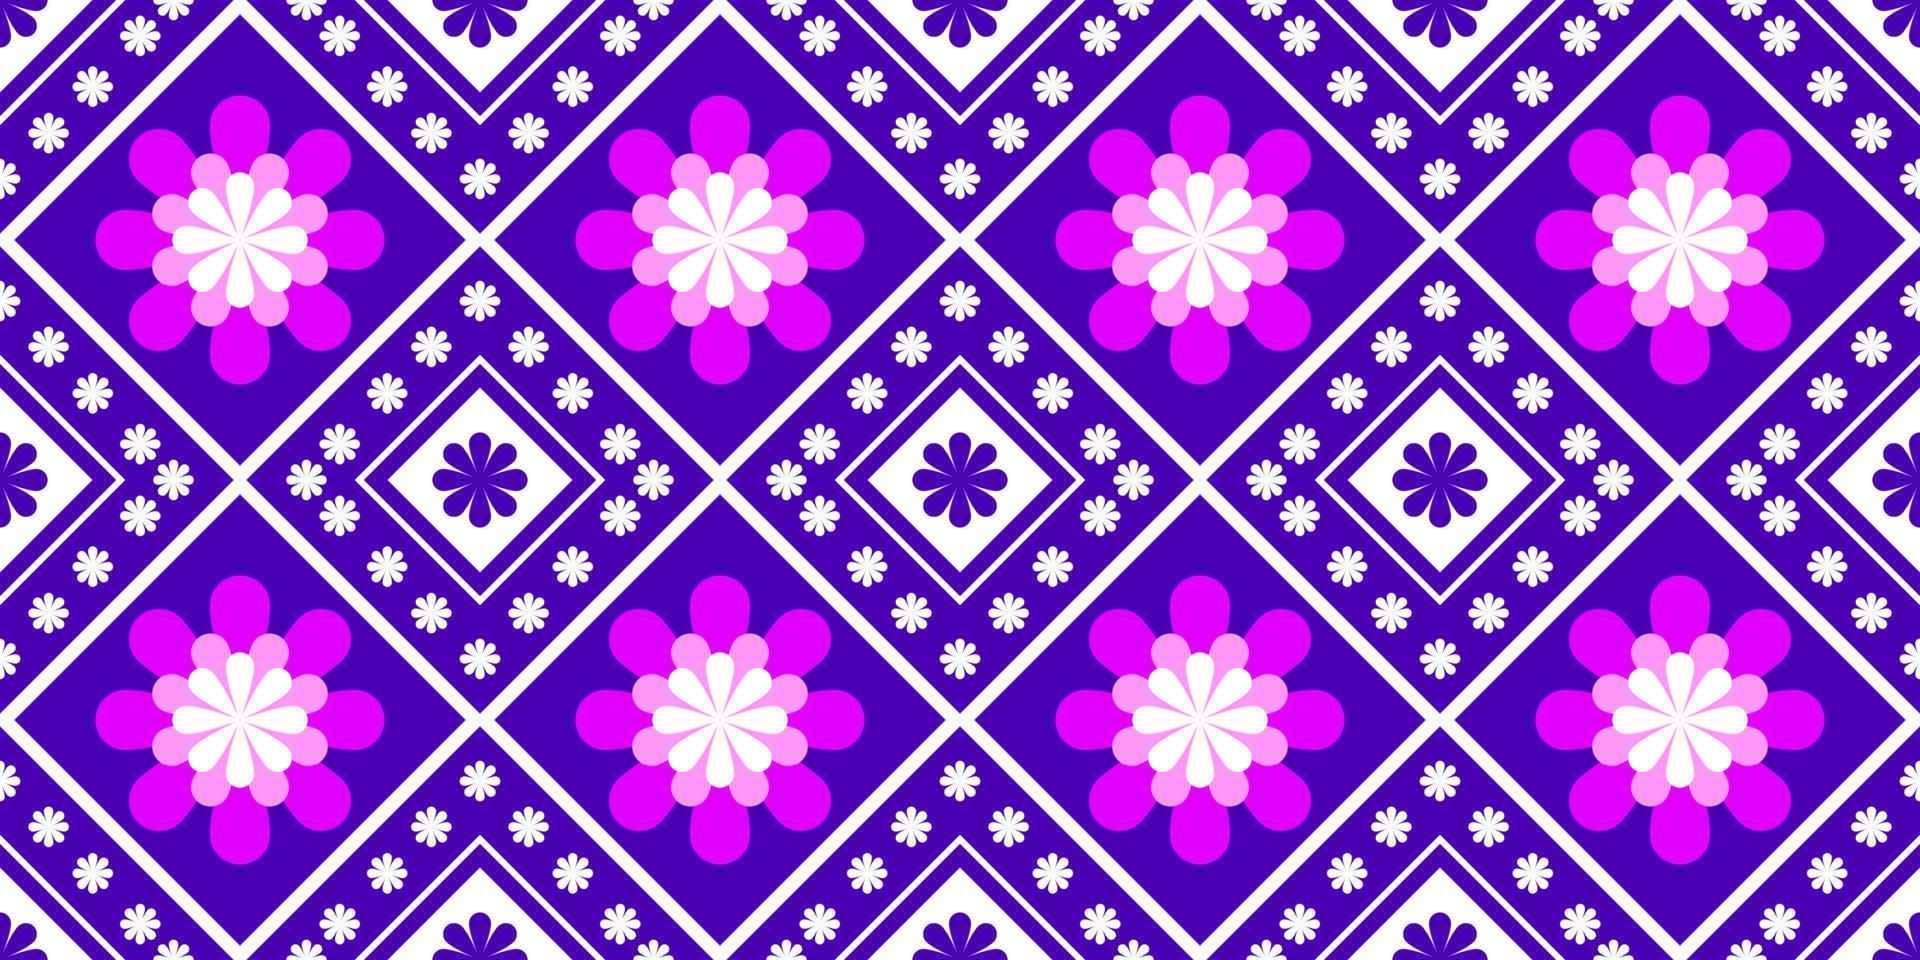 motif de tissu géométrique pour fond tapis papier peint vêtements wrap batik tissu broderie illustration vecteur belle